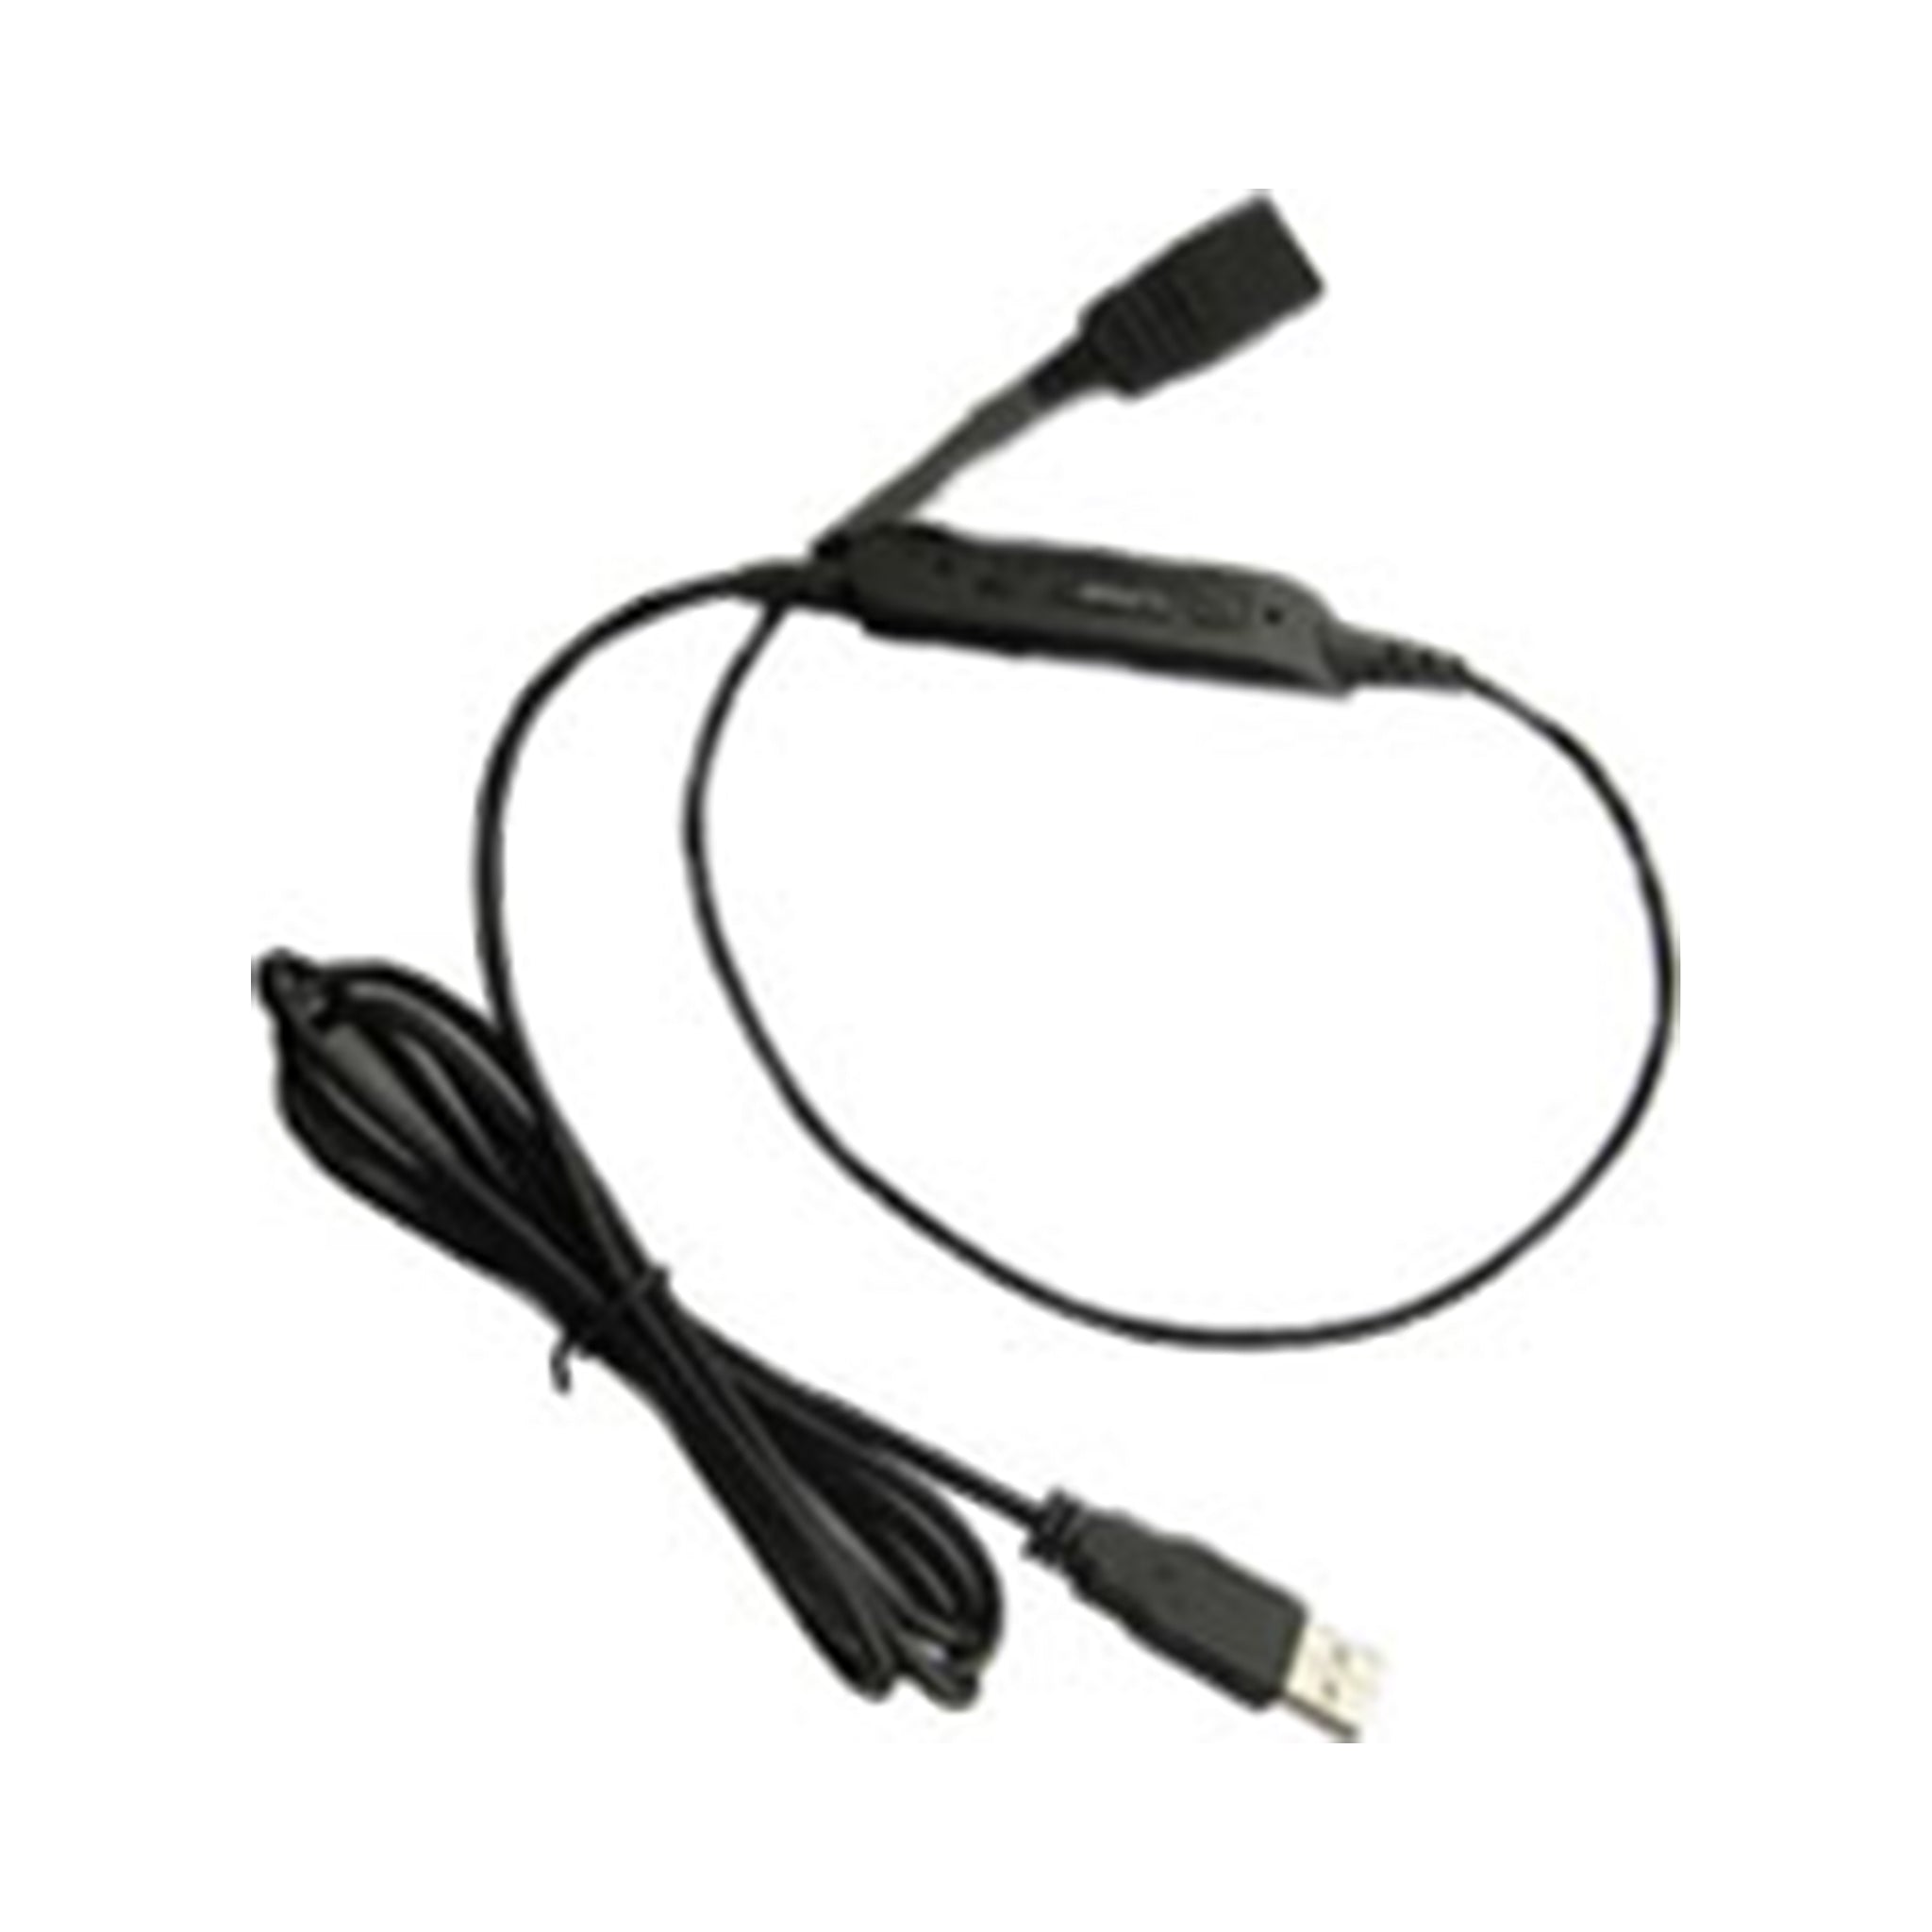 Vt Headset Convertor Qd-Usb Plug(02) * Qd-Usb Plug(02) - Headsets Accessories